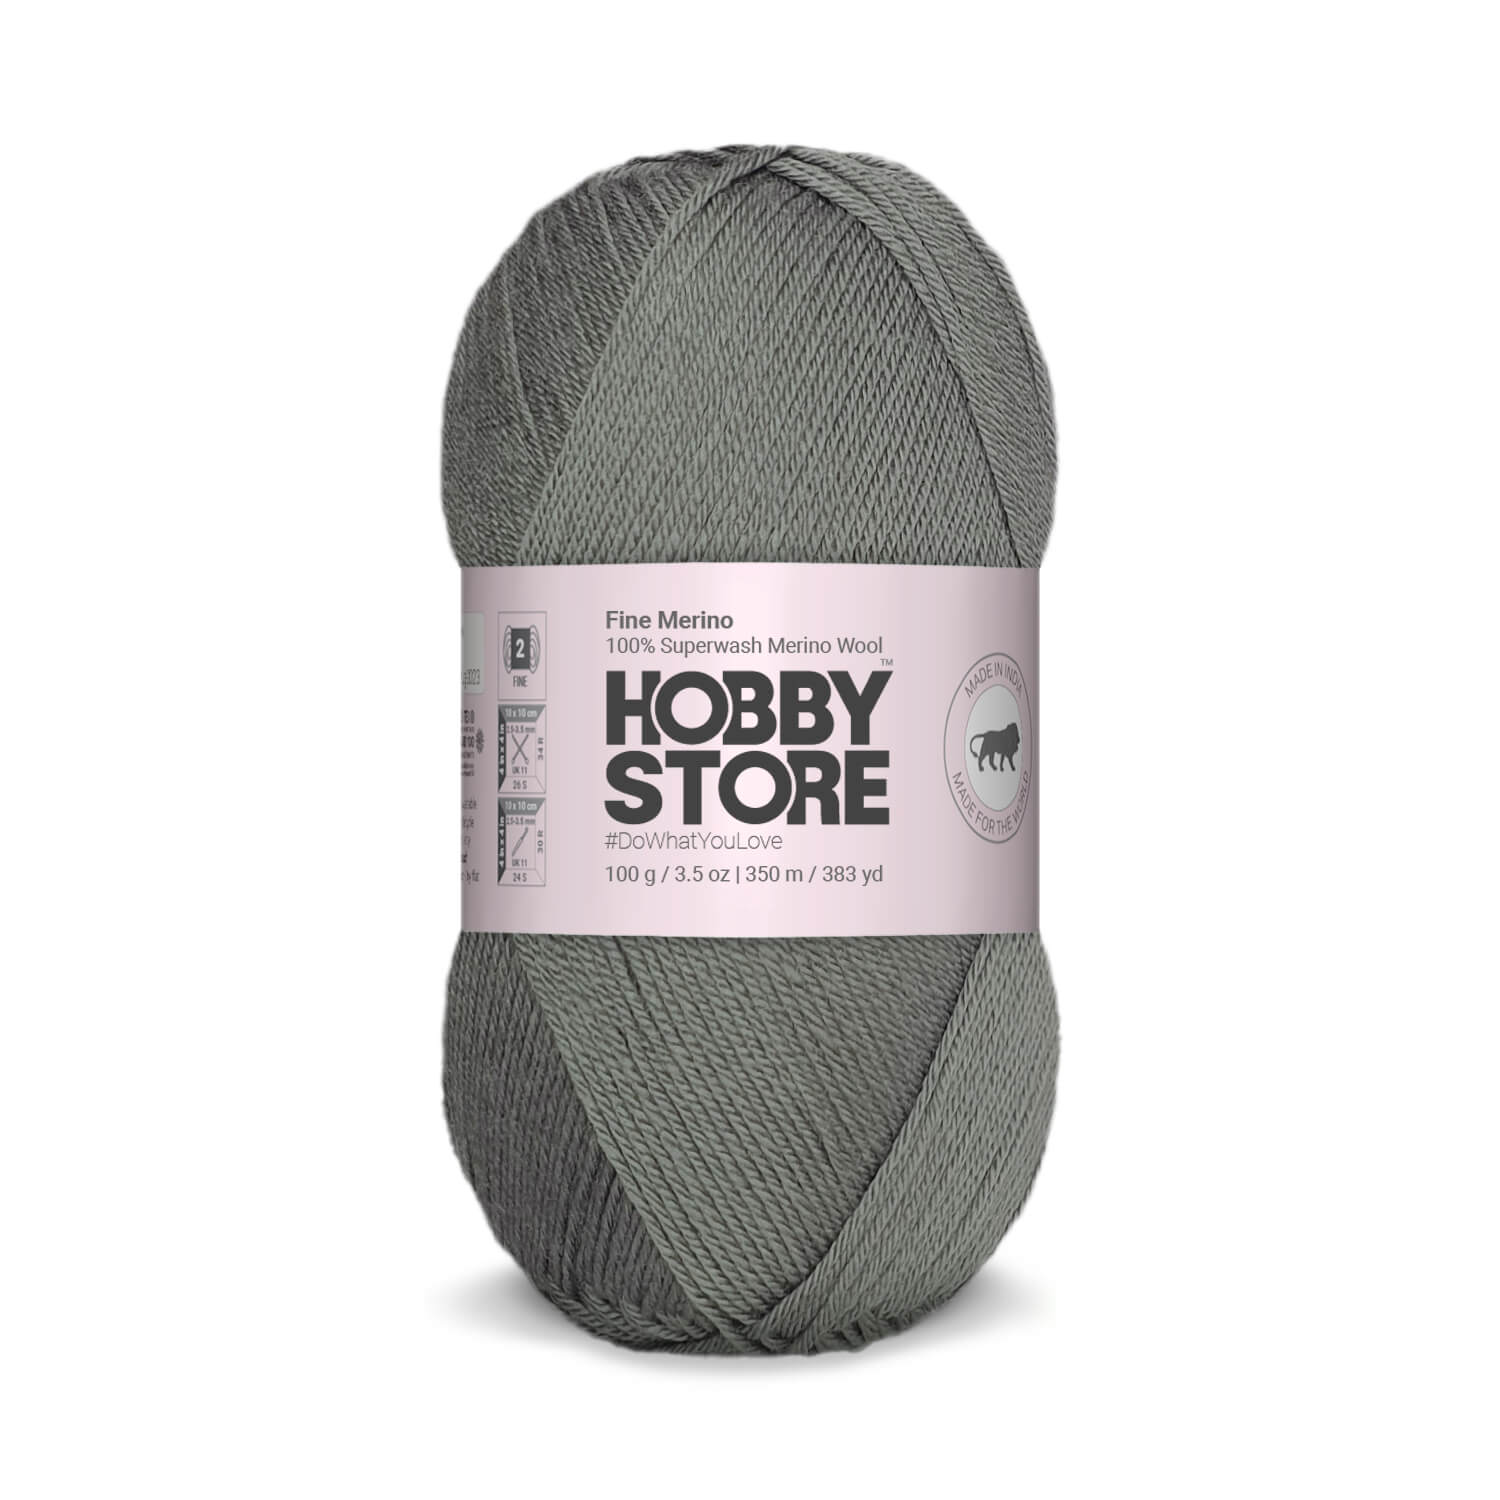 Fine Merino Wool by Hobby Store - Dark Grey FM007